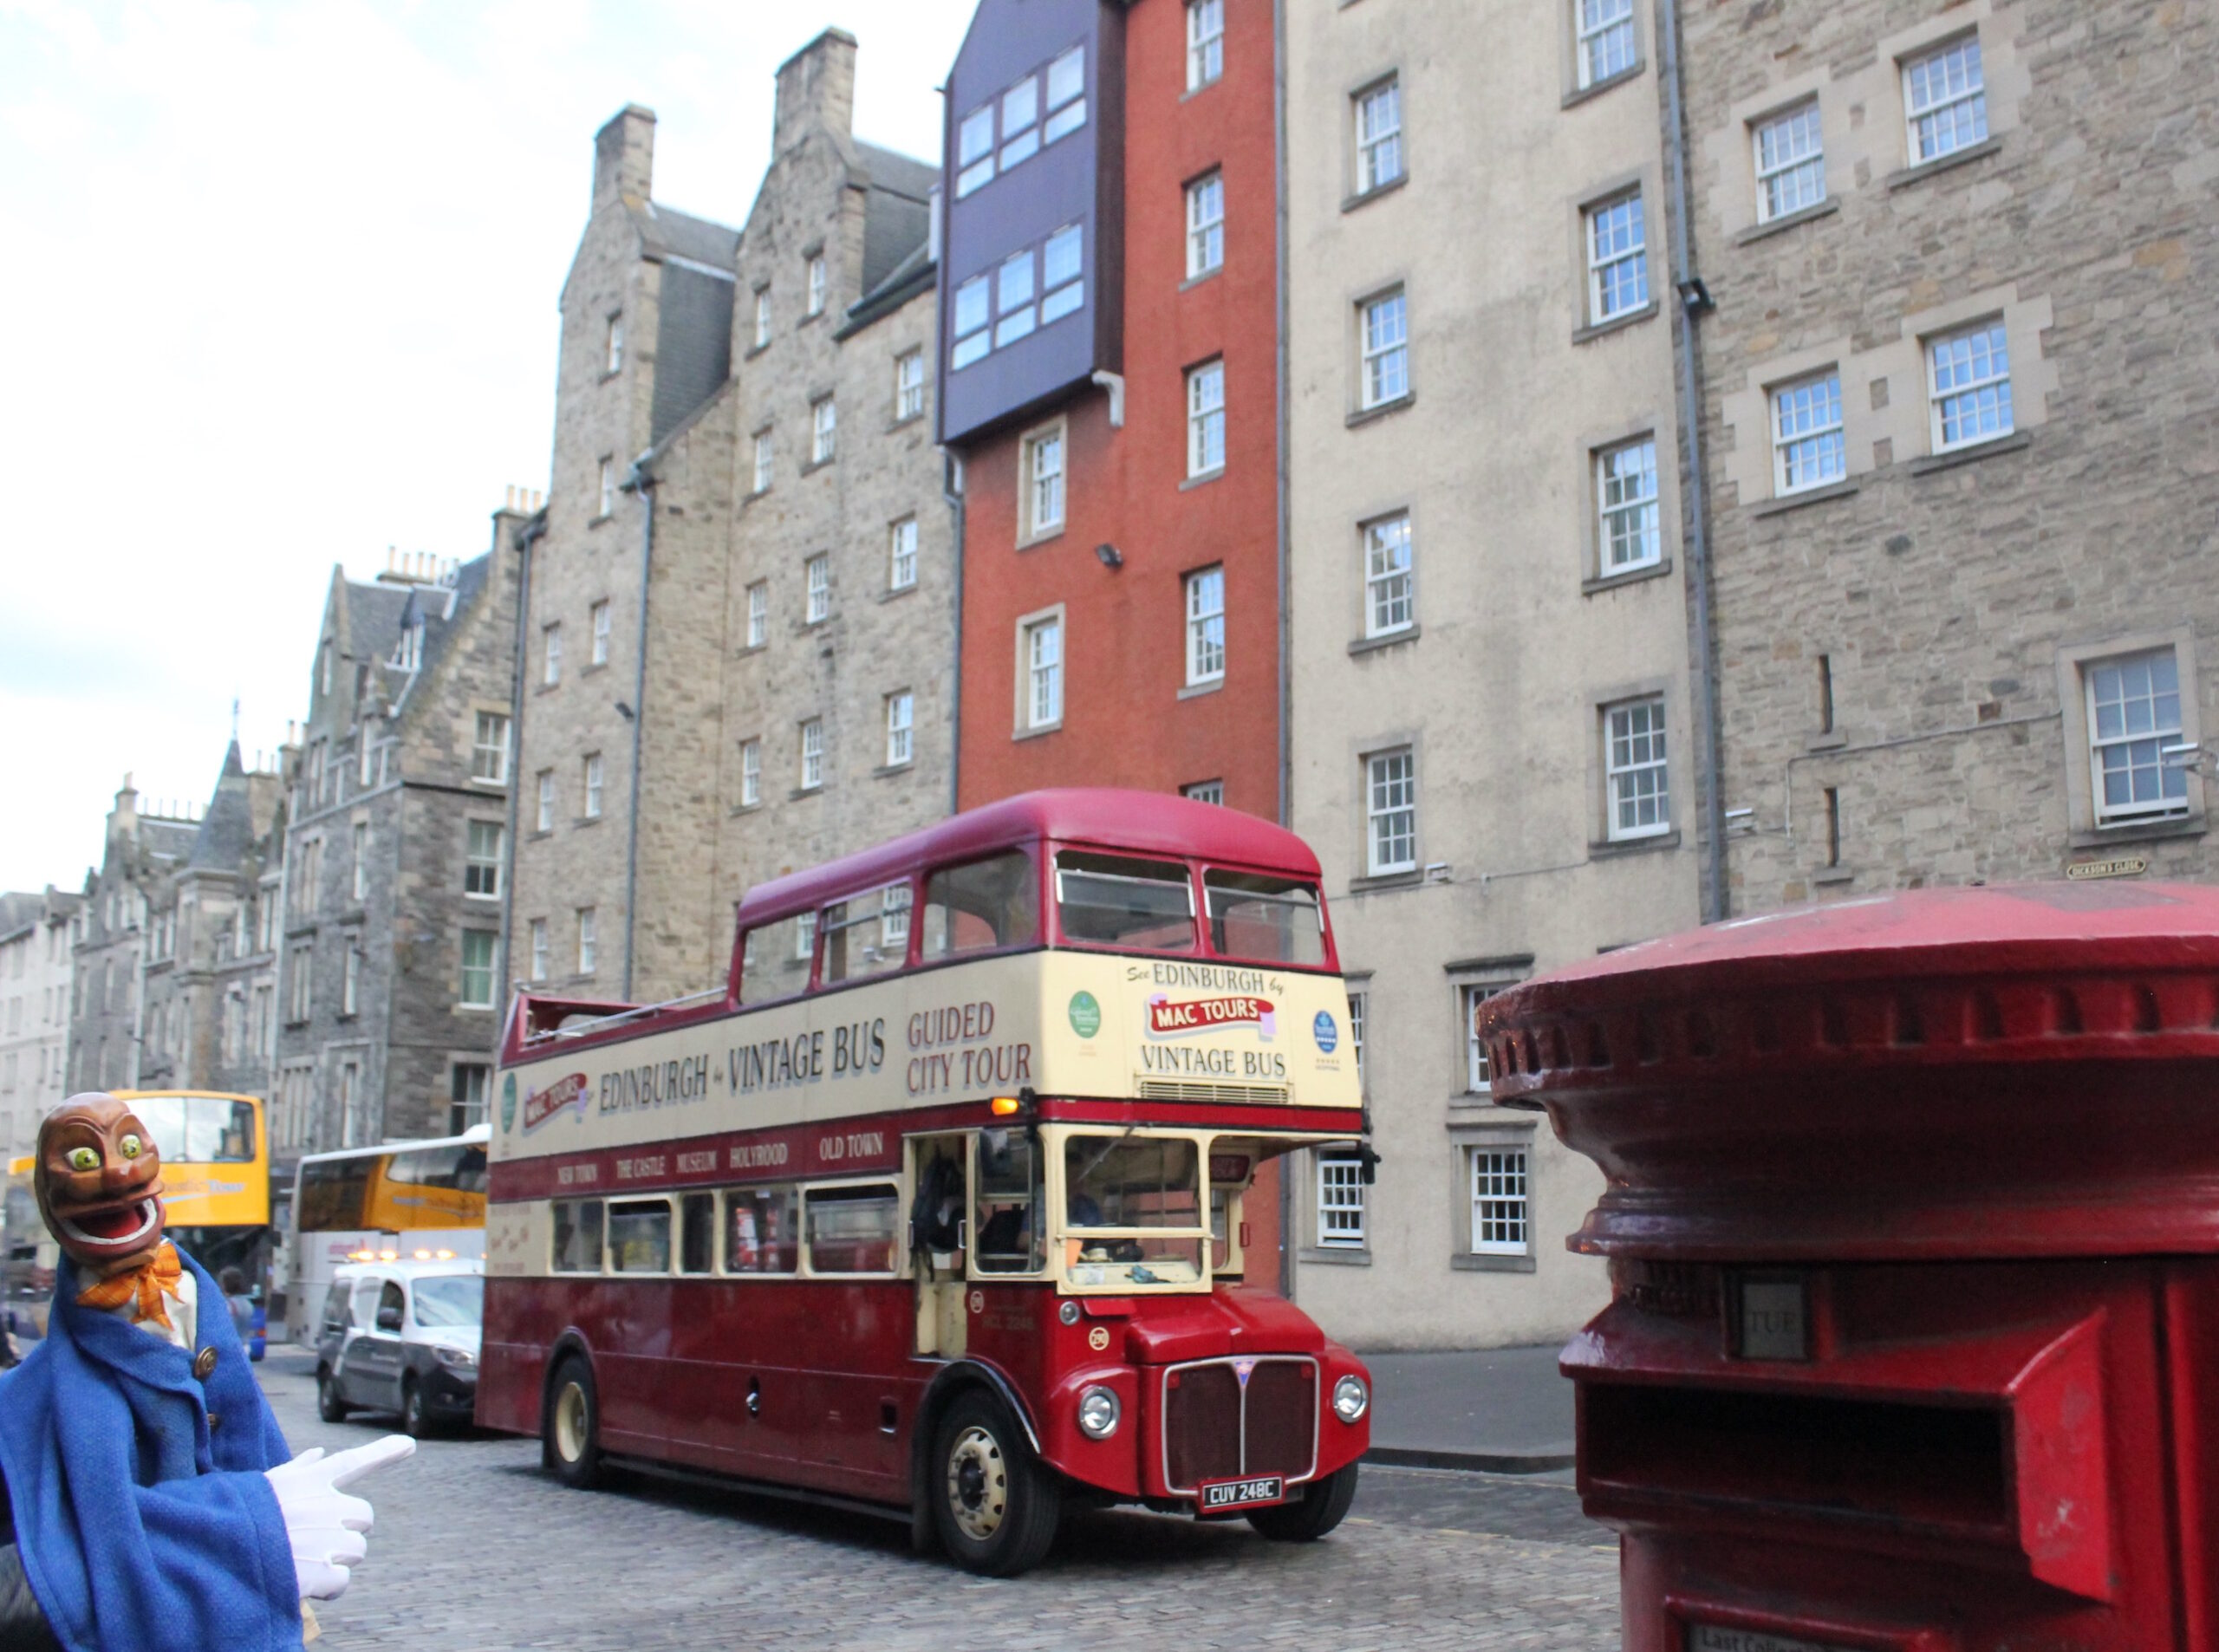 Igor next to a double-decker bus in Edinburgh